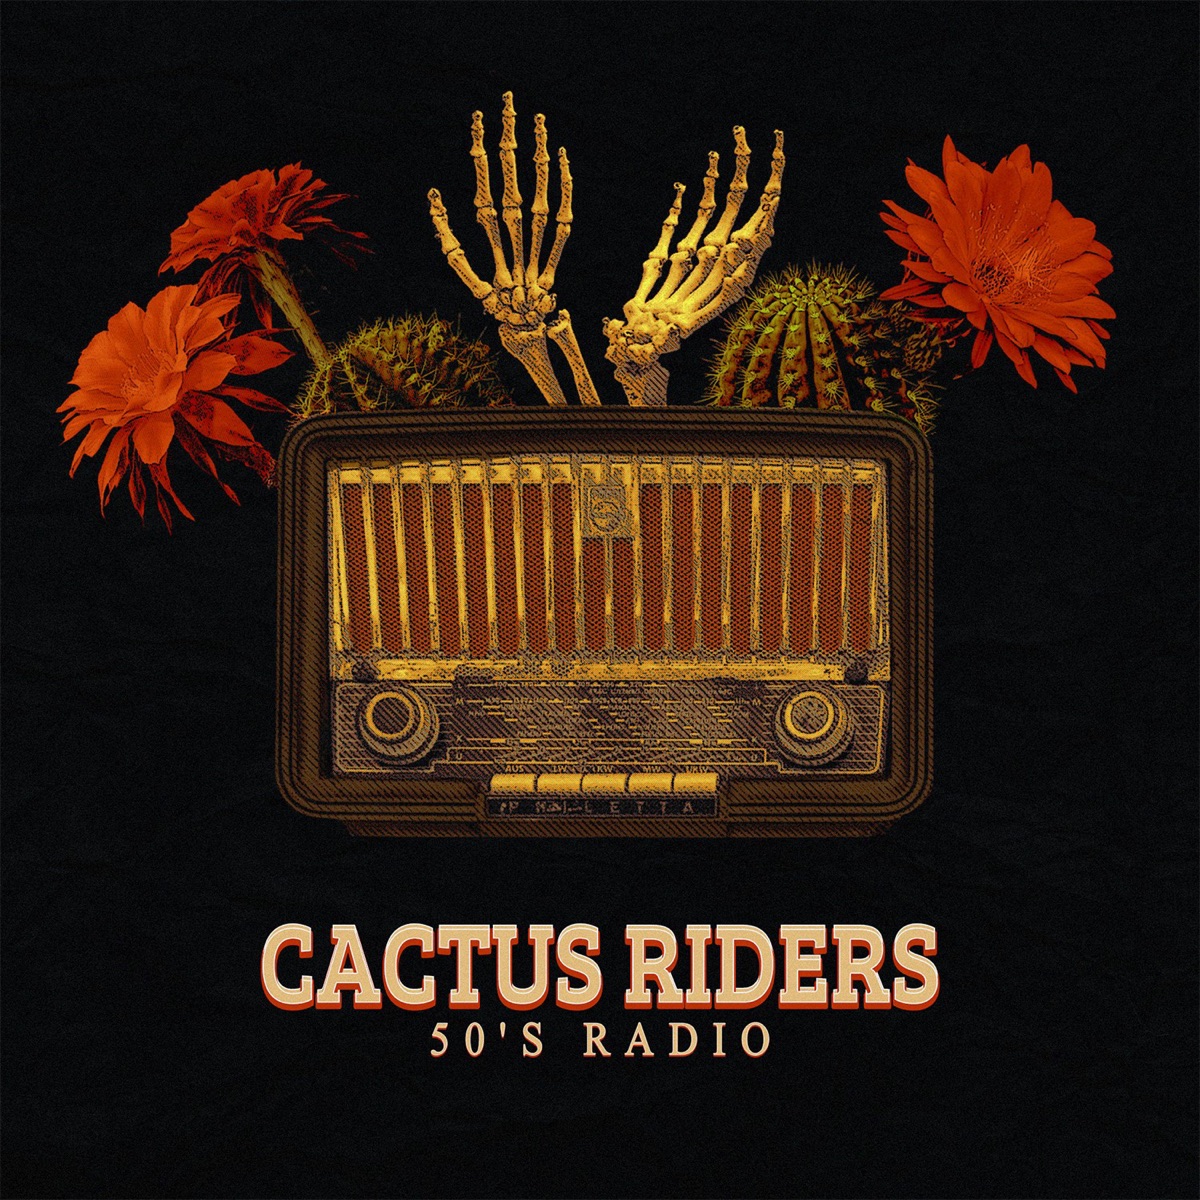 50's Radio - Album by Cactus Riders - Apple Music